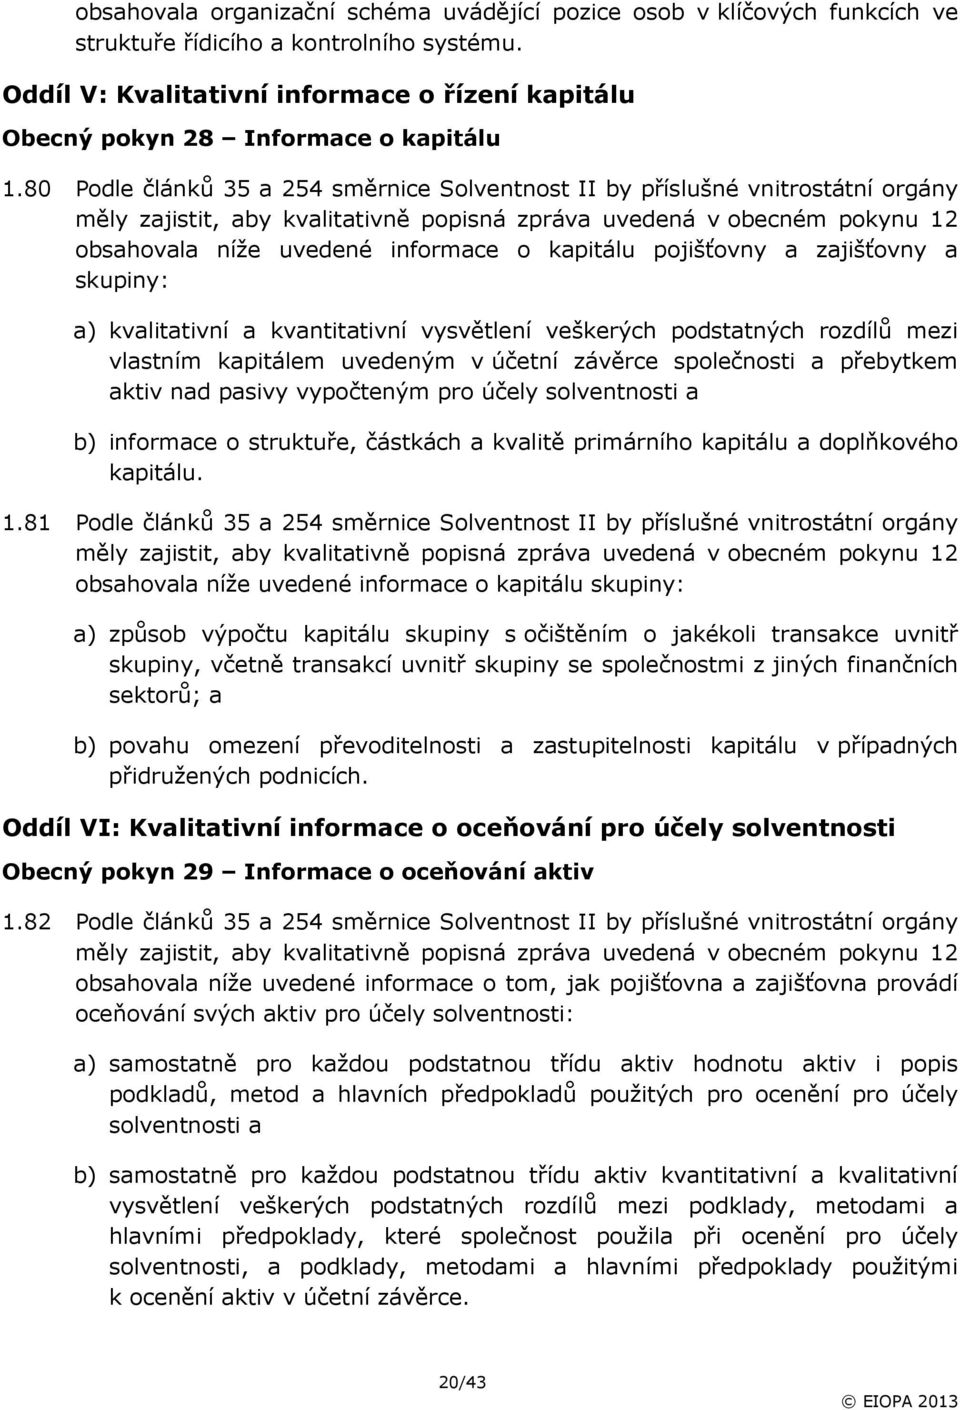 80 Podle článků 35 a 254 směrnice Solventnost II by příslušné vnitrostátní orgány měly zajistit, aby kvalitativně popisná zpráva uvedená v obecném pokynu 12 obsahovala níže uvedené informace o